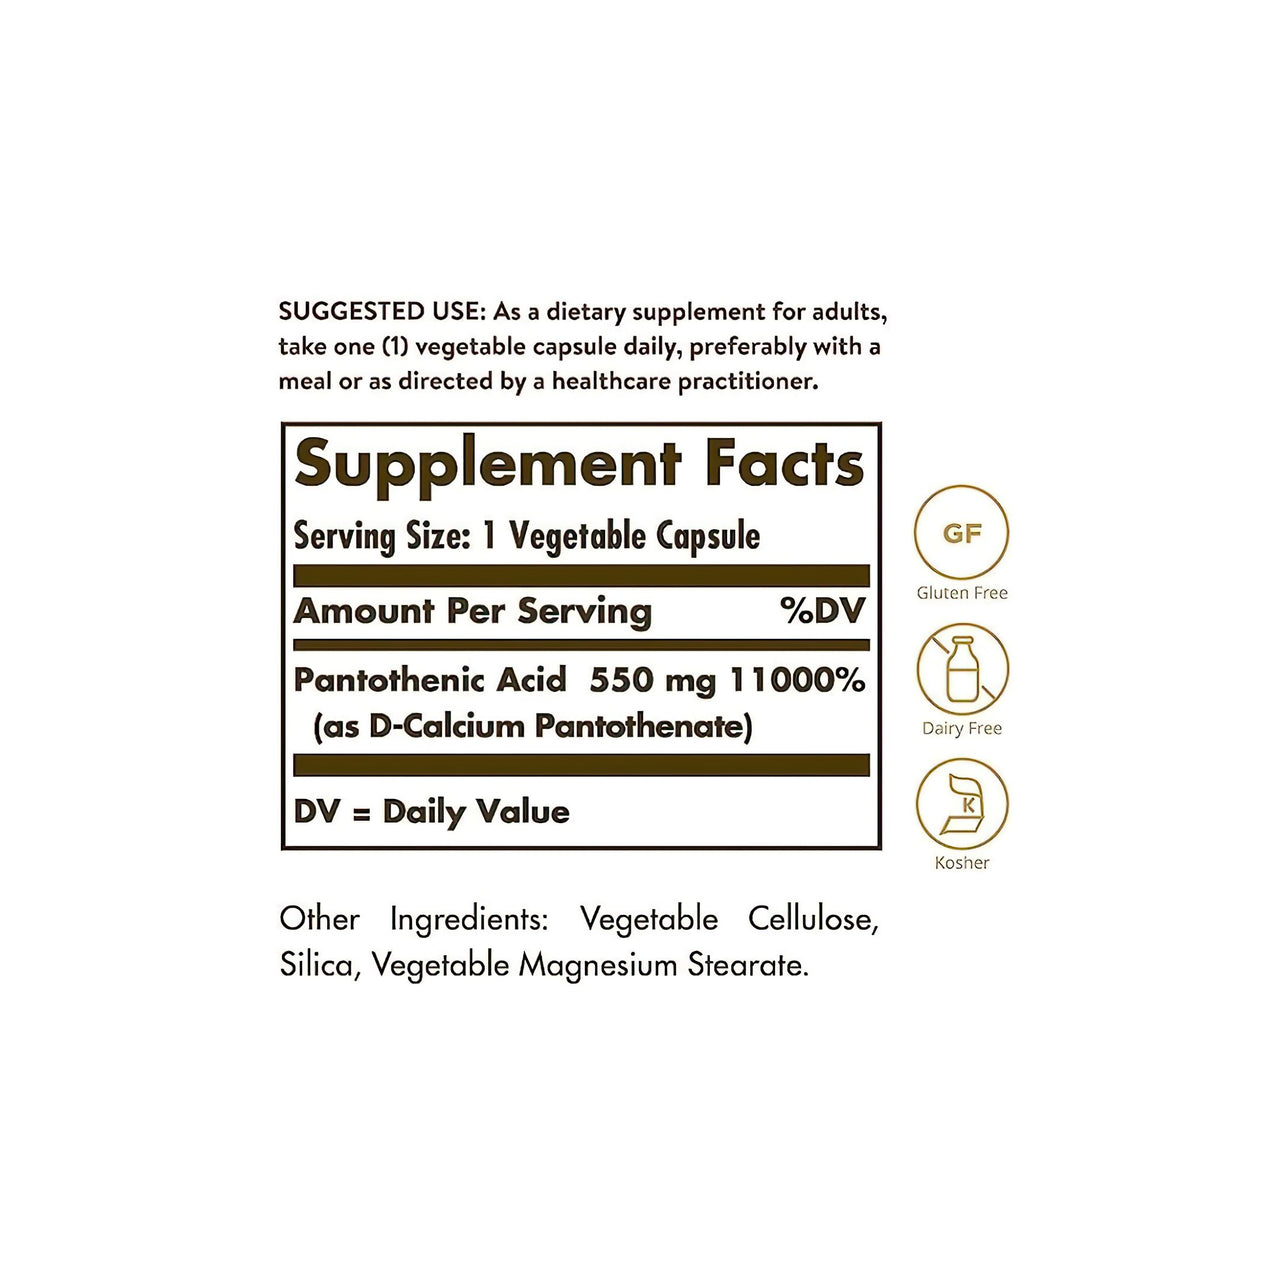 L'etichetta di Solgar mostra gli ingredienti di un integratore alimentare, tra cui Acido Pantotenico 550 mg 100 Capsule Vegetali.